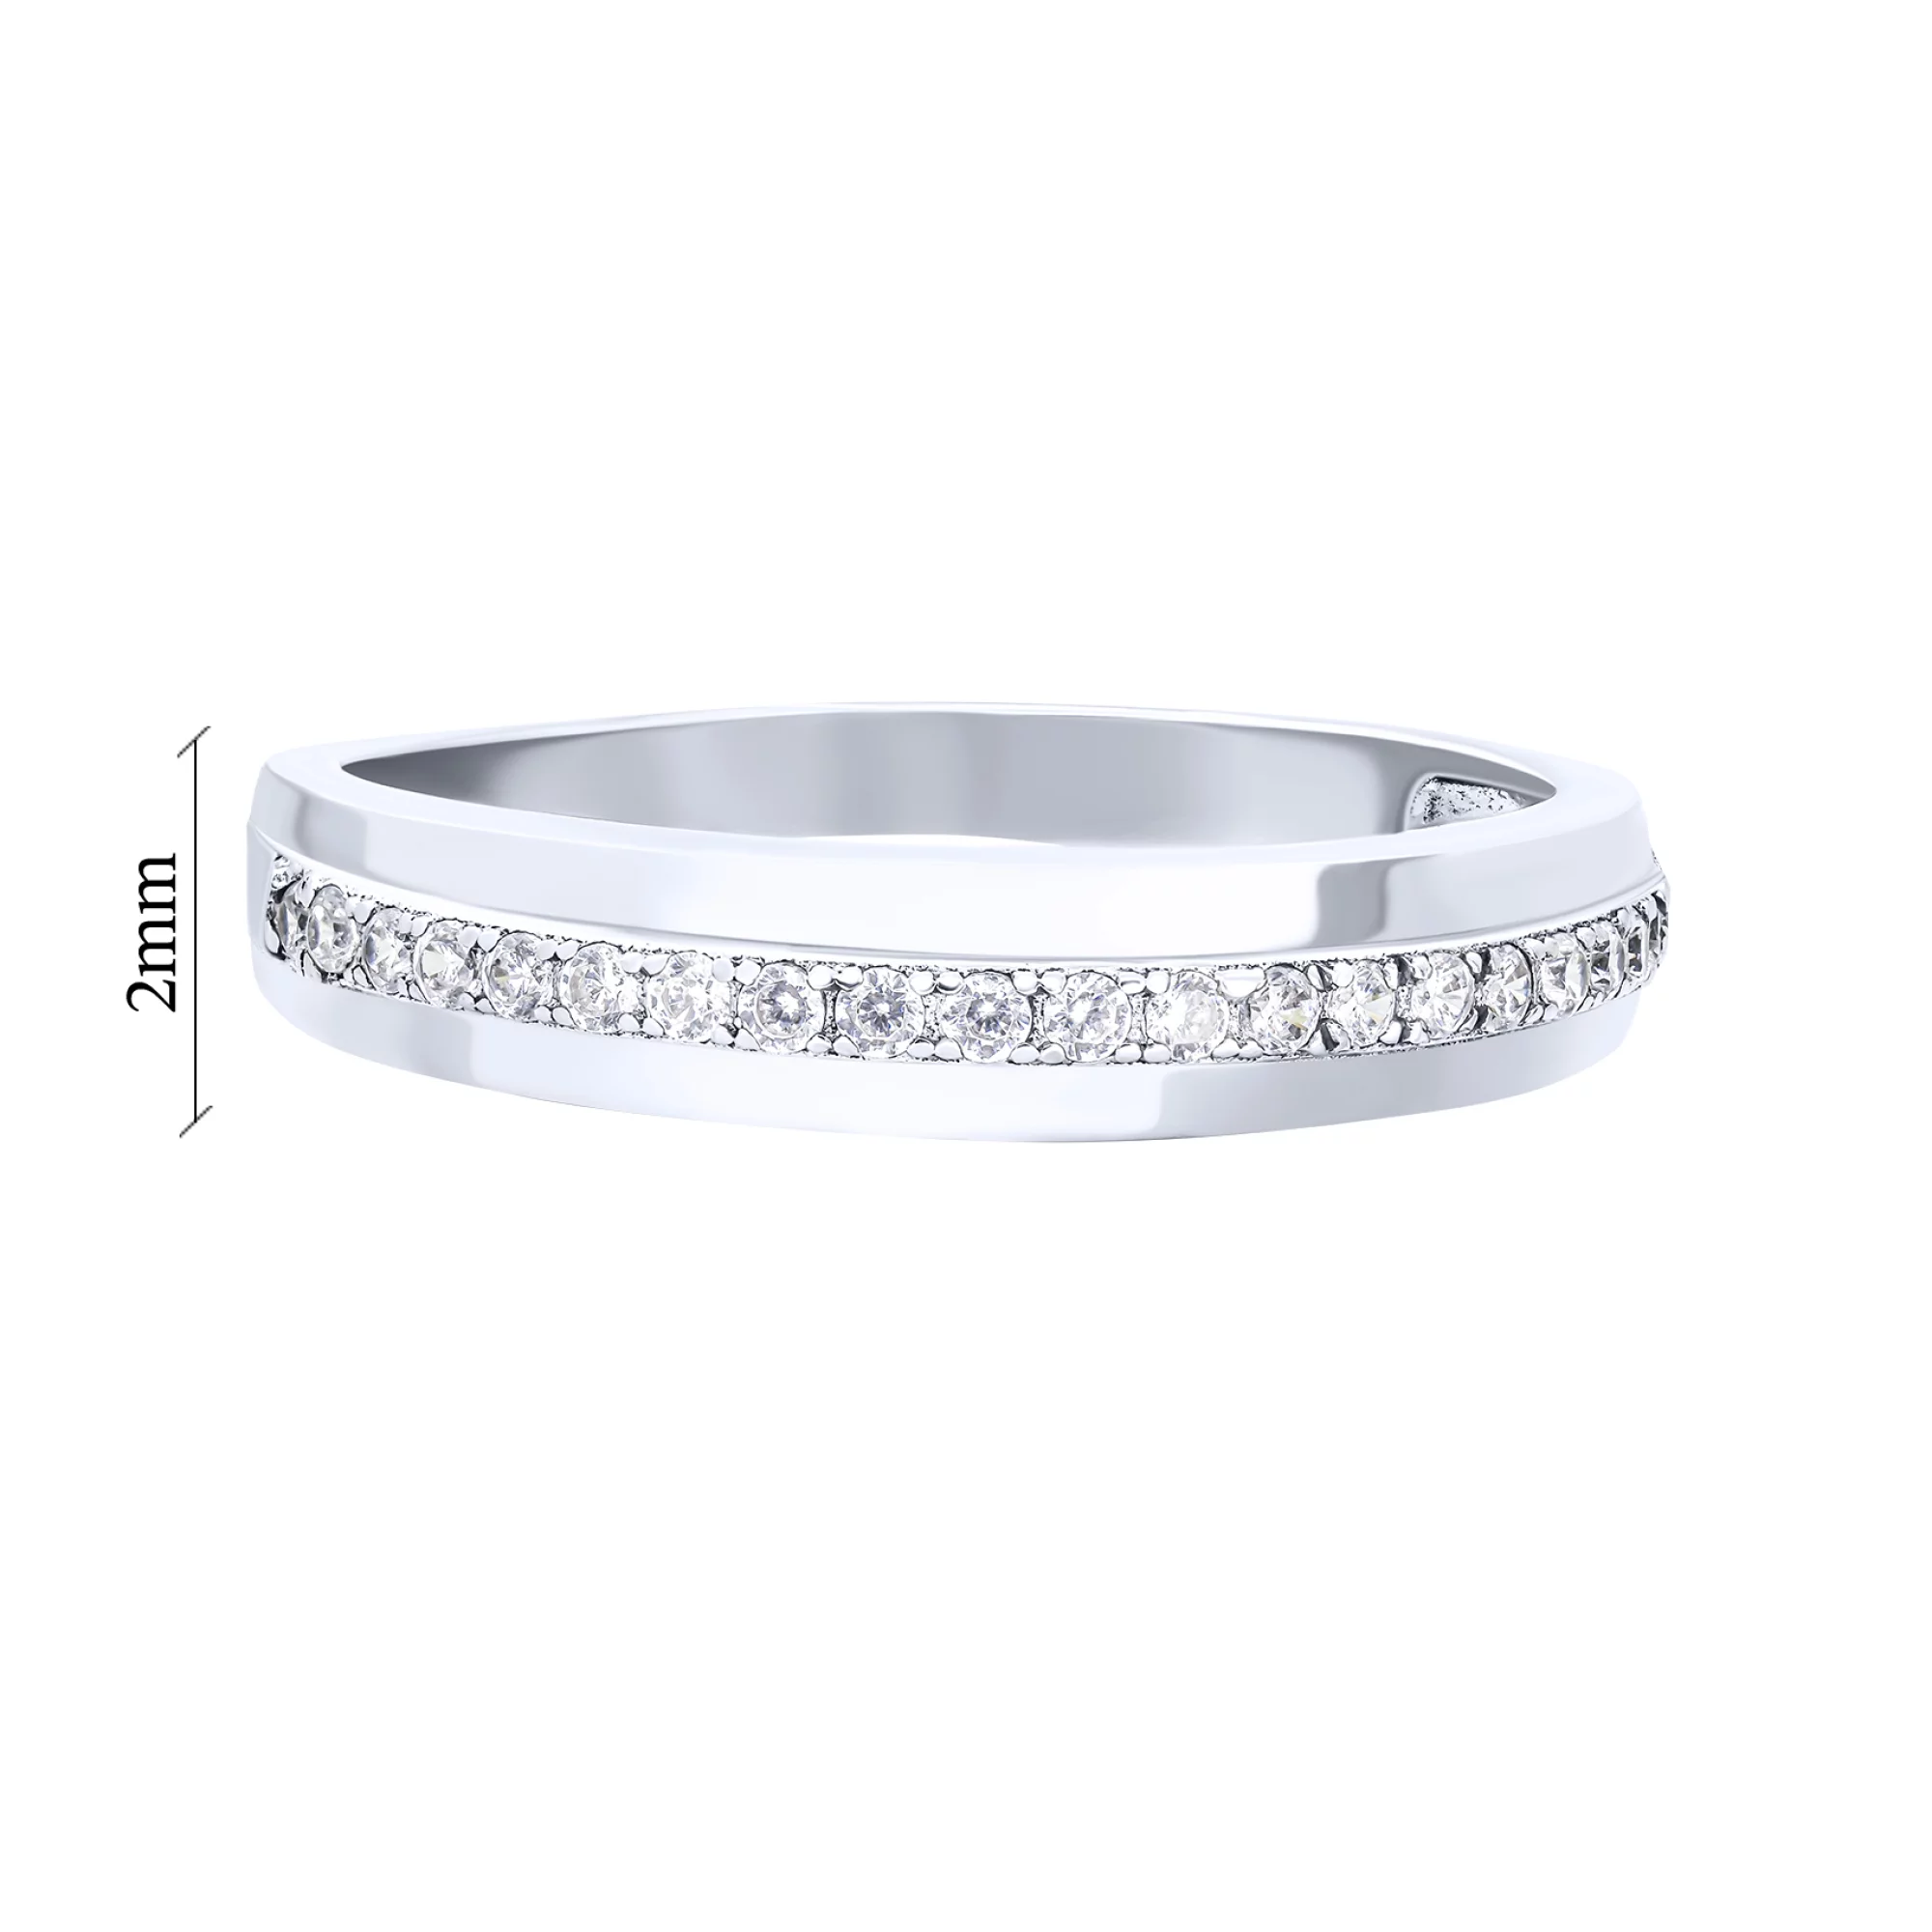 Кольцо серебряное с дорожкой фианитов - 1611531 – изображение 3